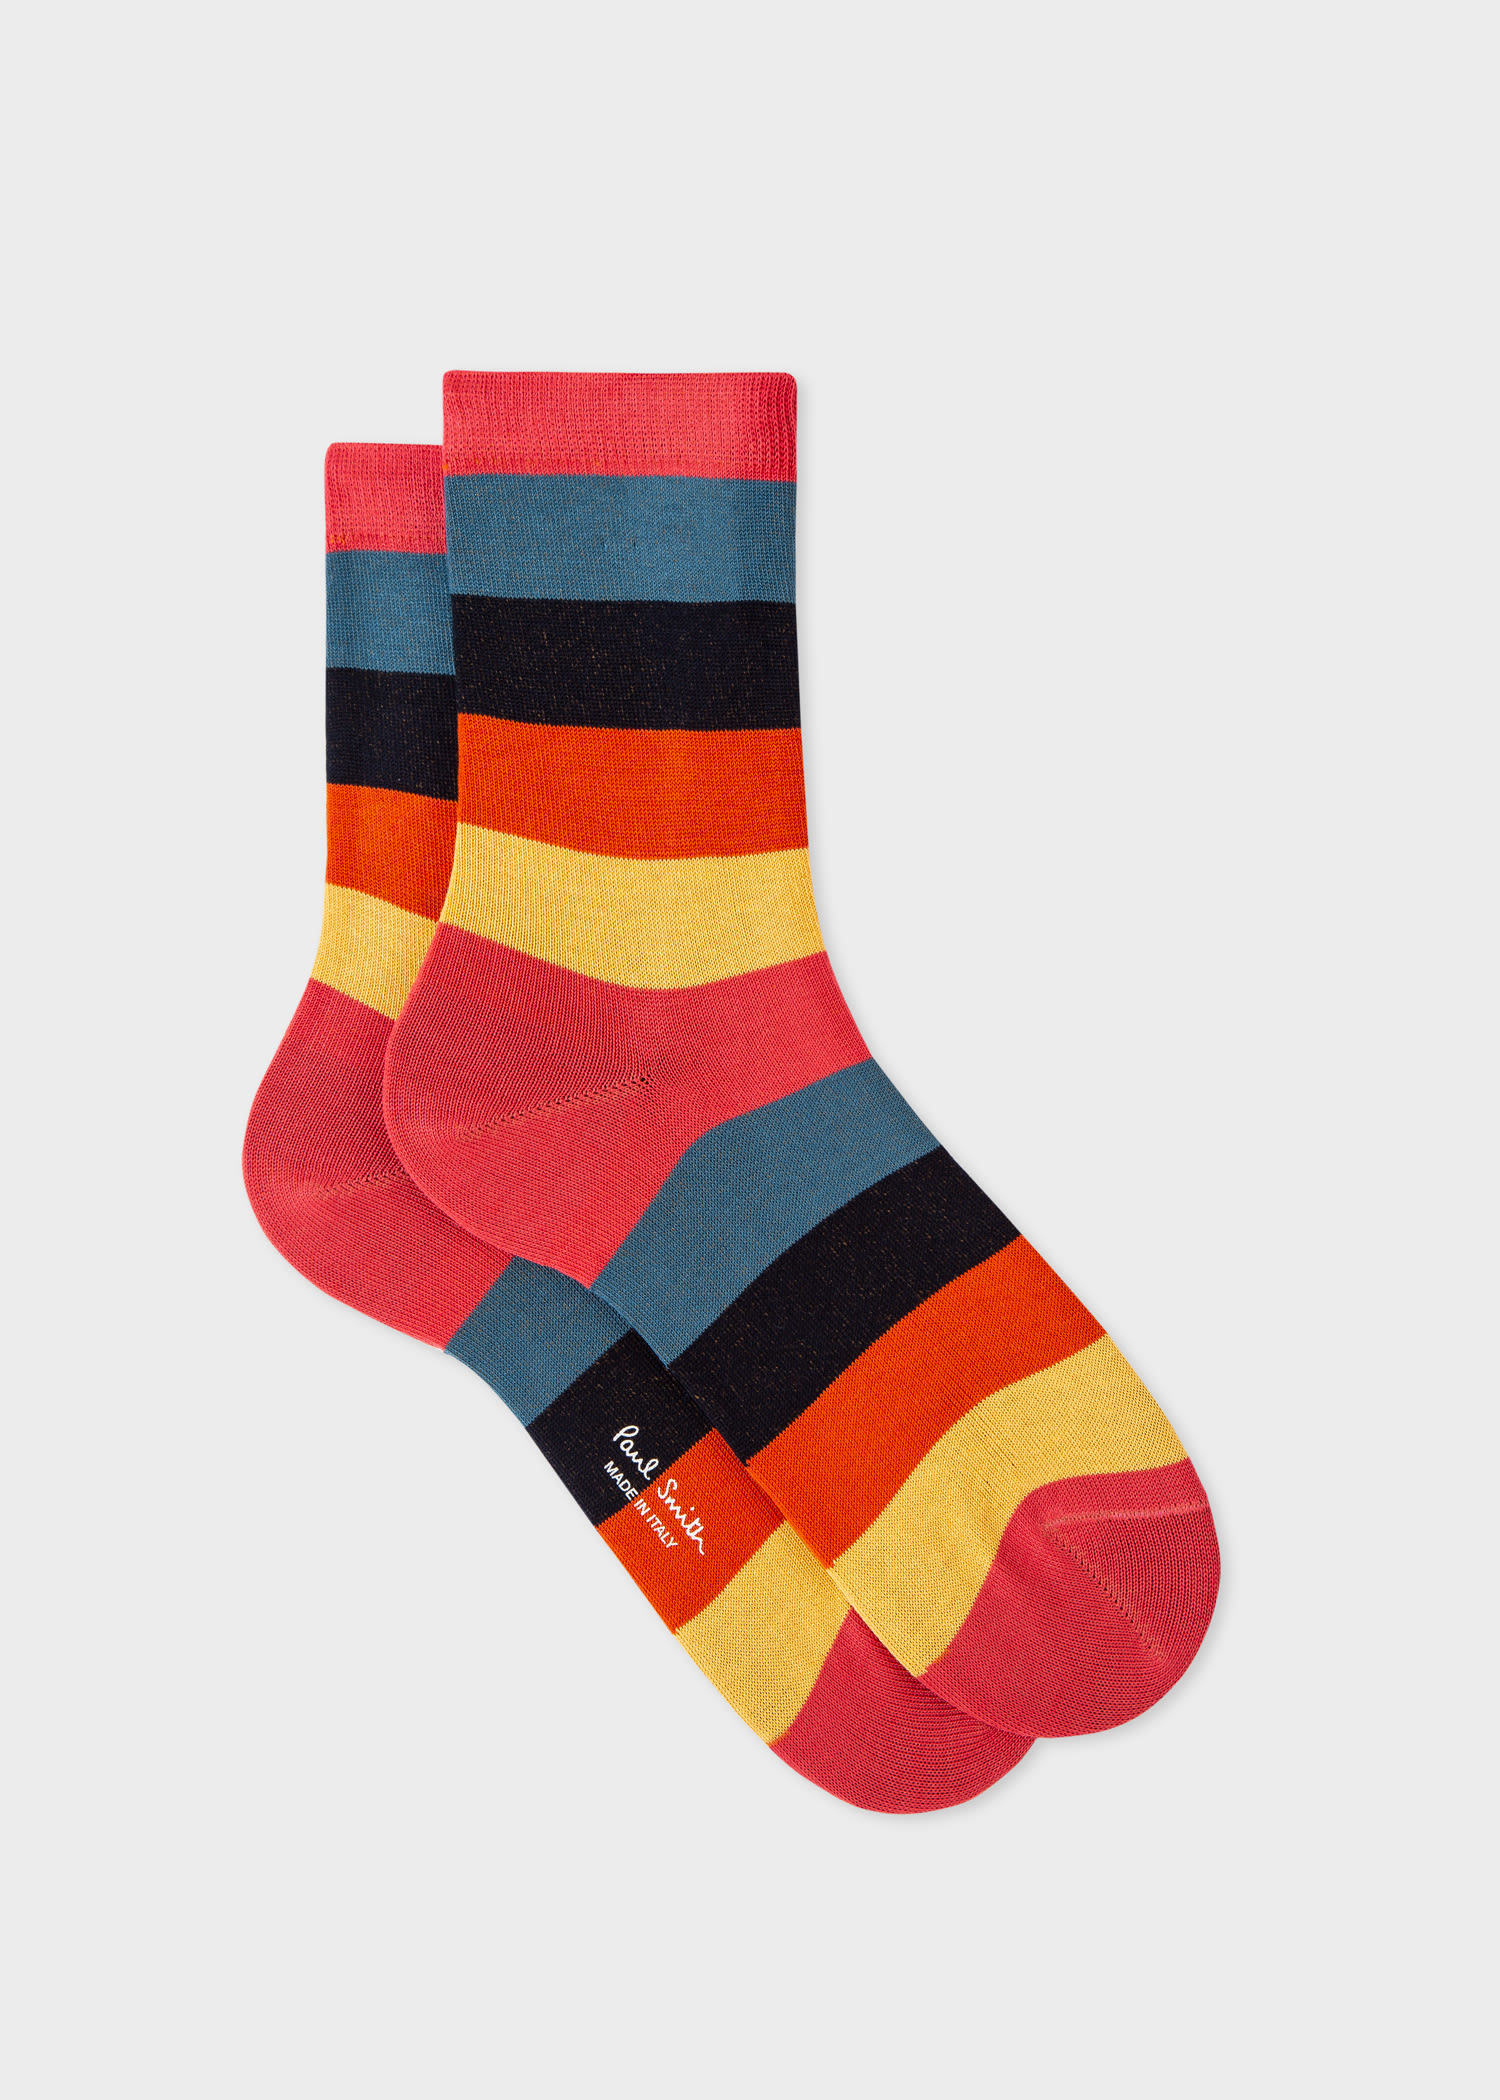 Paul Smith 'artist Stripe' Socks Red In Multi